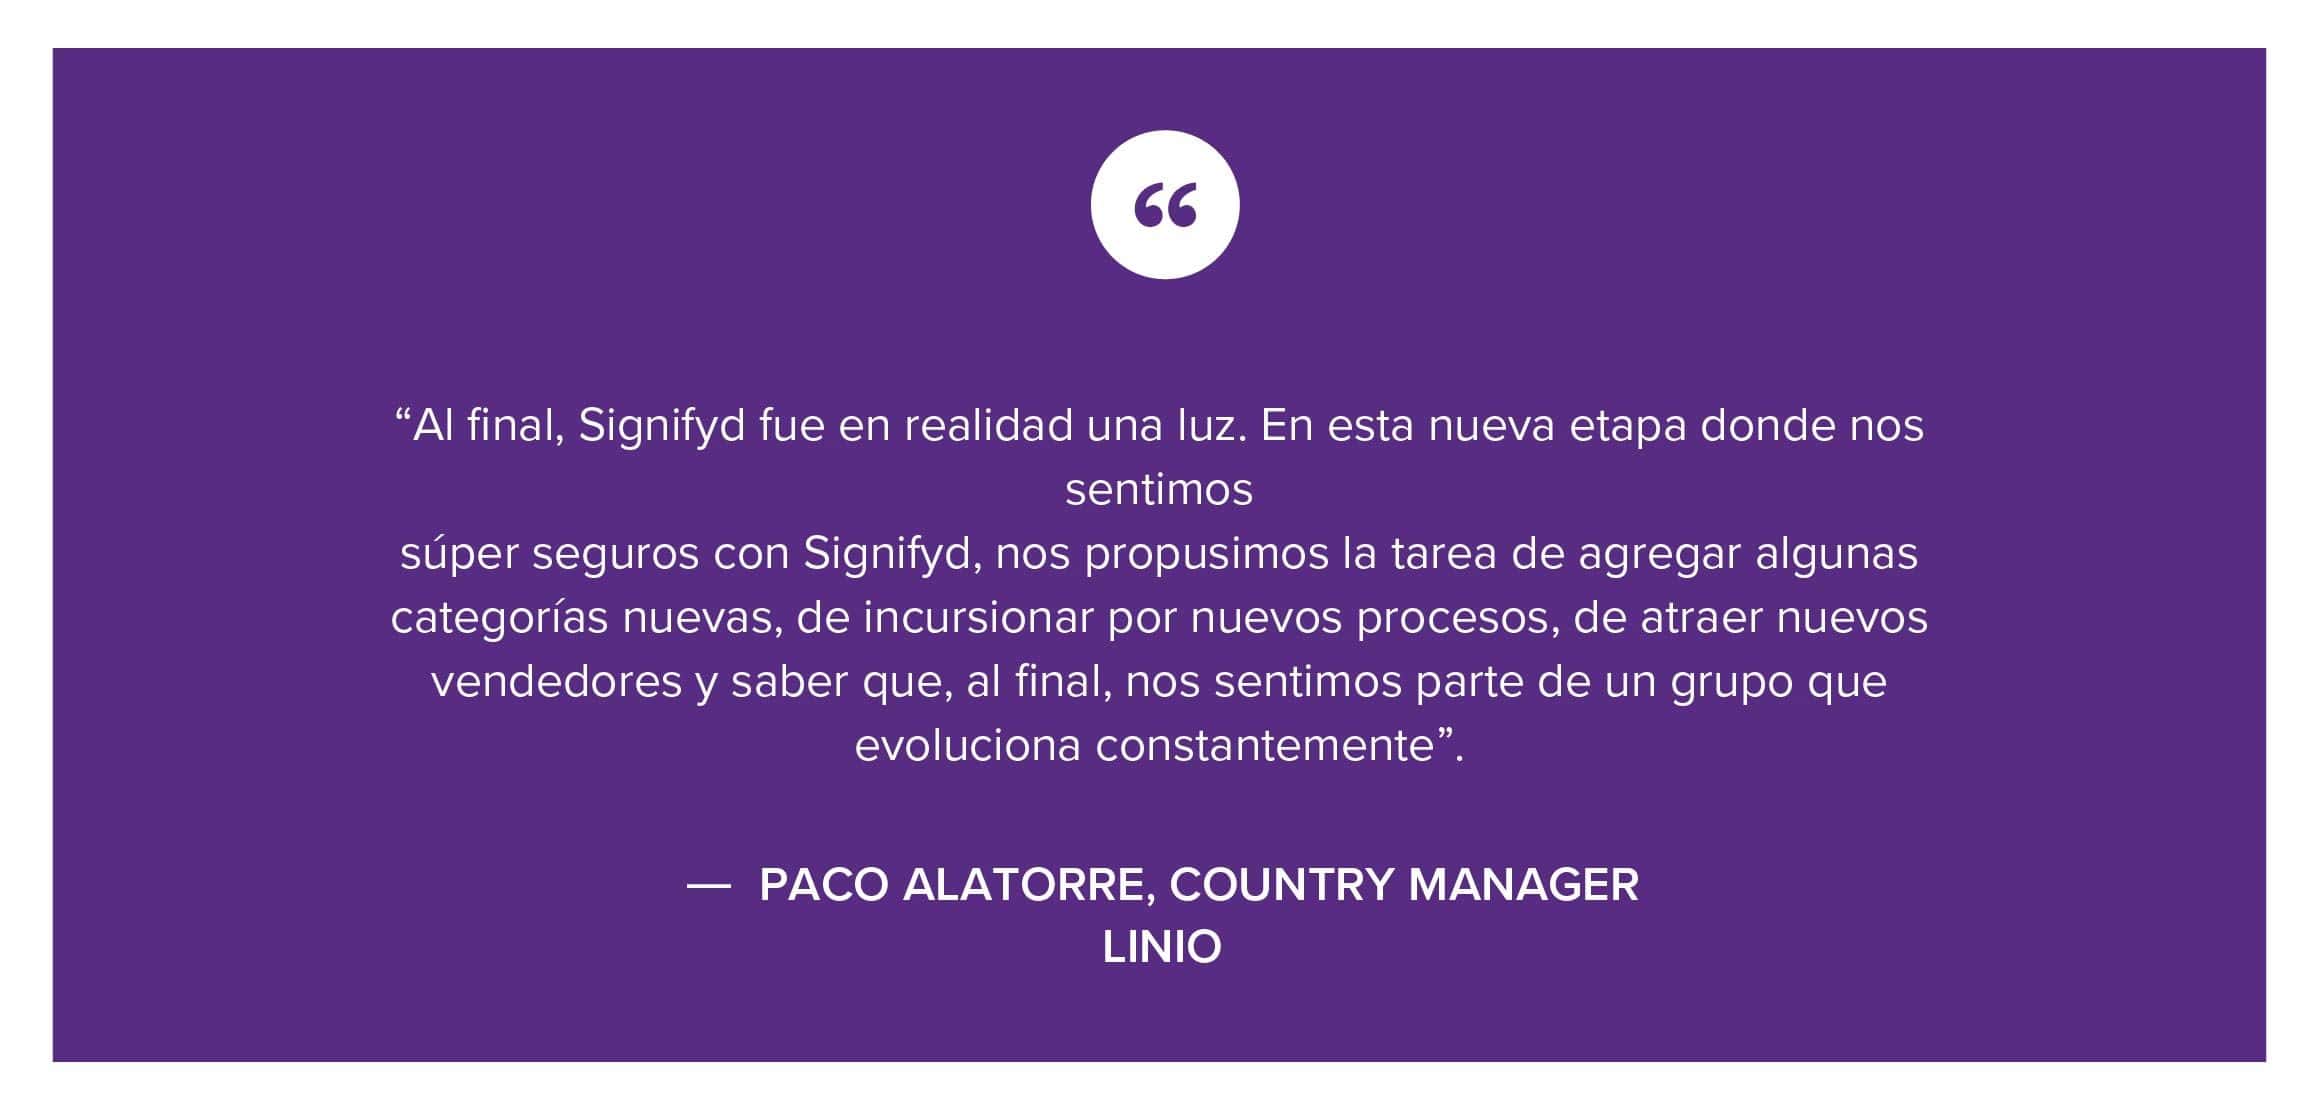 El testimonio de Paco Alatorre, COUNTRY MANAGER, Linio